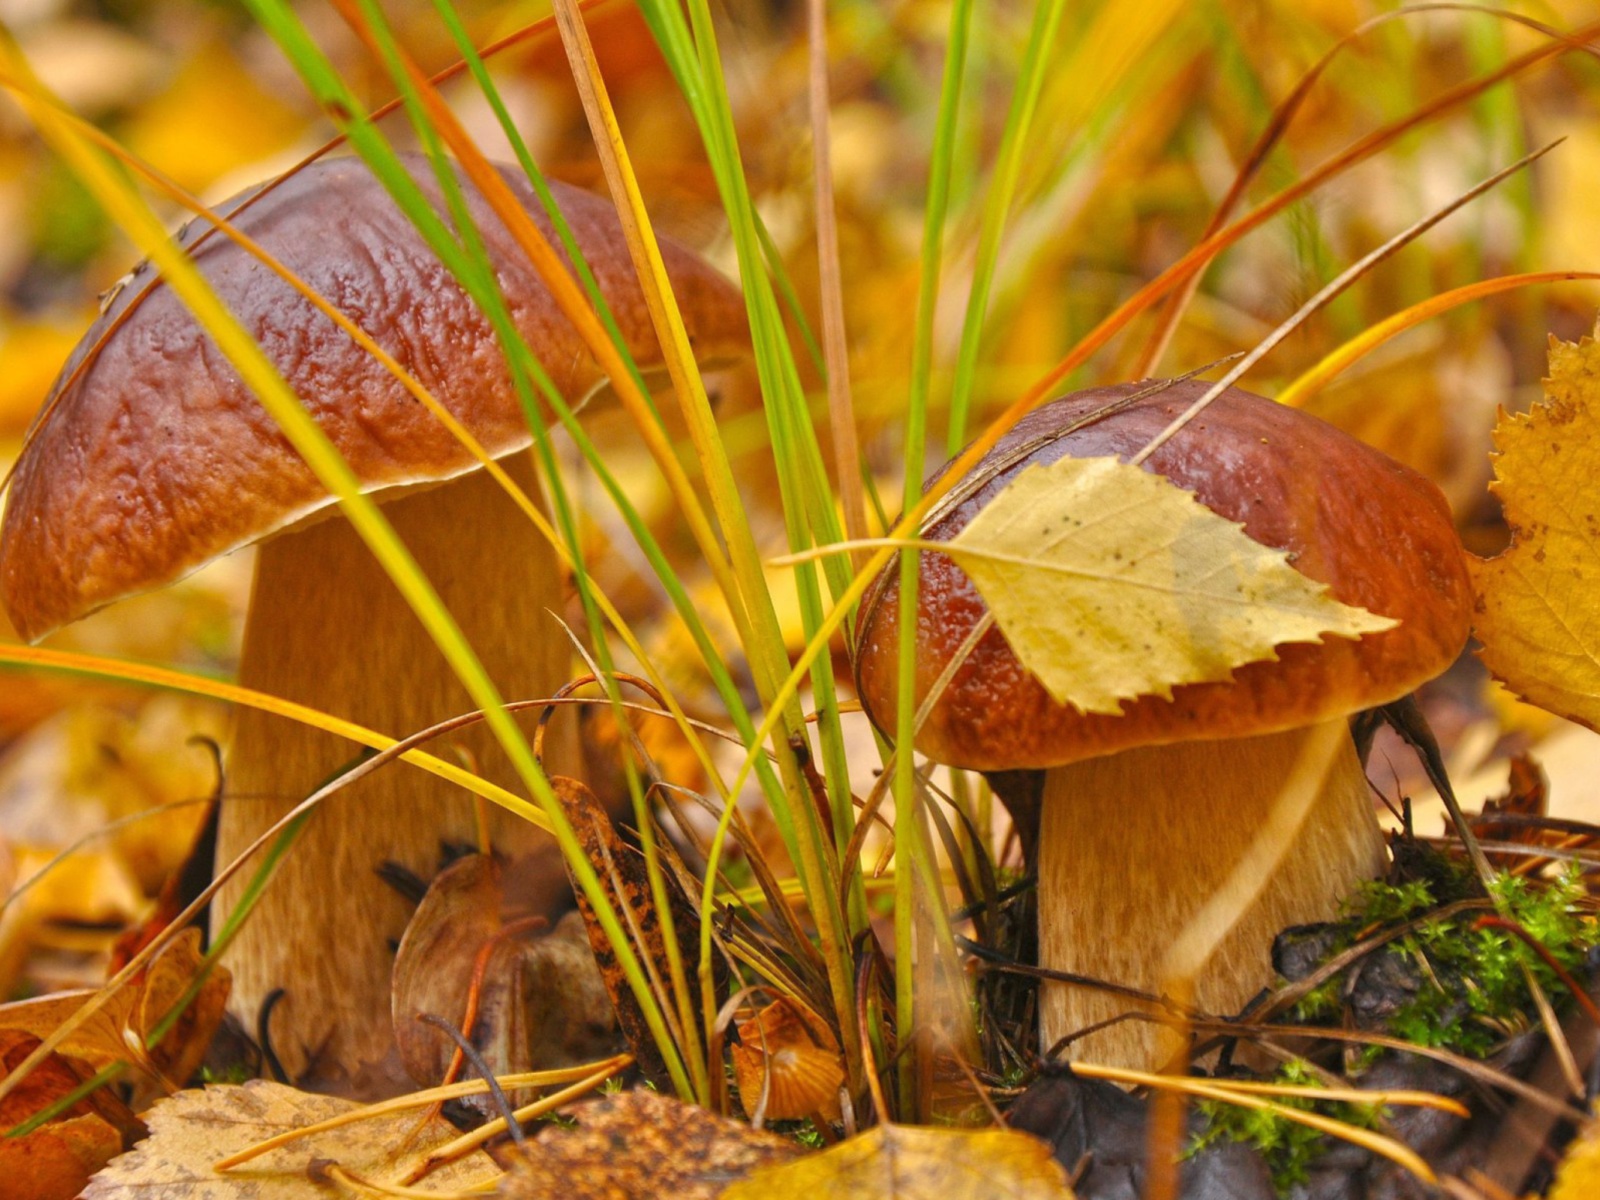 Обои Autumn Mushrooms with Yellow Leaves 1600x1200